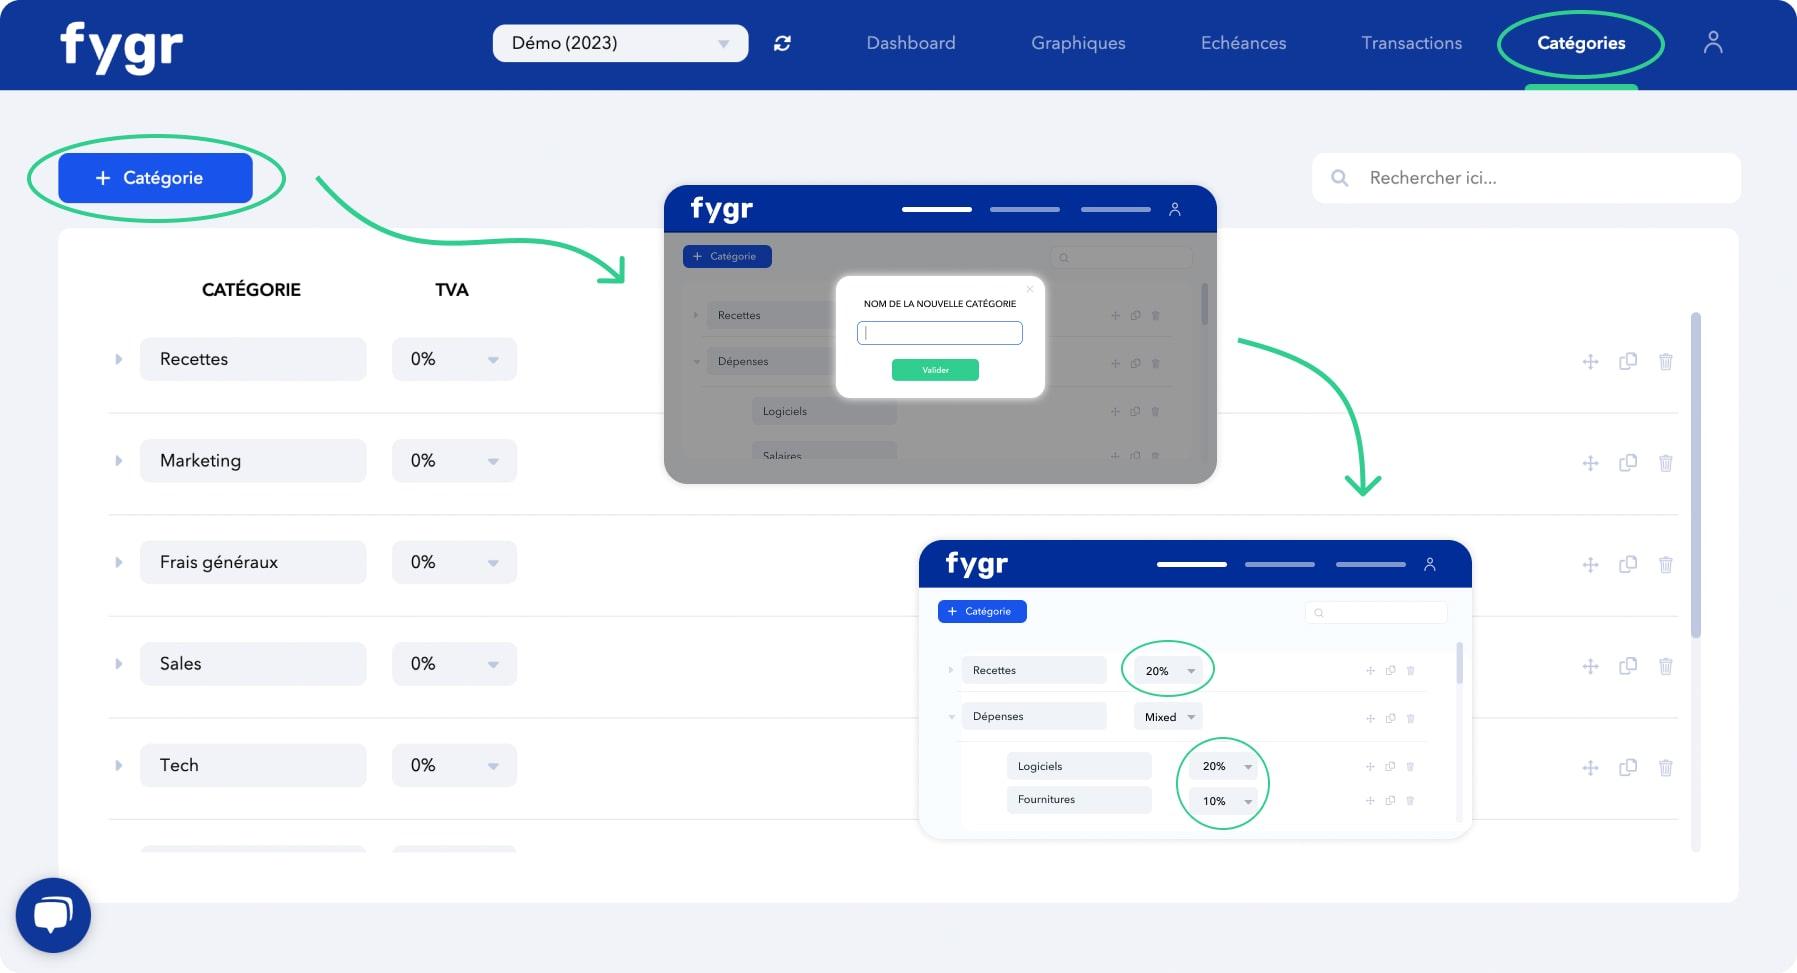 Fygr - Fygr vous permet de personnaliser une arborescence de catégories et sous-catégories de façon 100% personnalisée. Construisez un dashboard qui a du sens pour vous, et qui permet d'automatiser le calcul de votre TVA prévisionnelle.